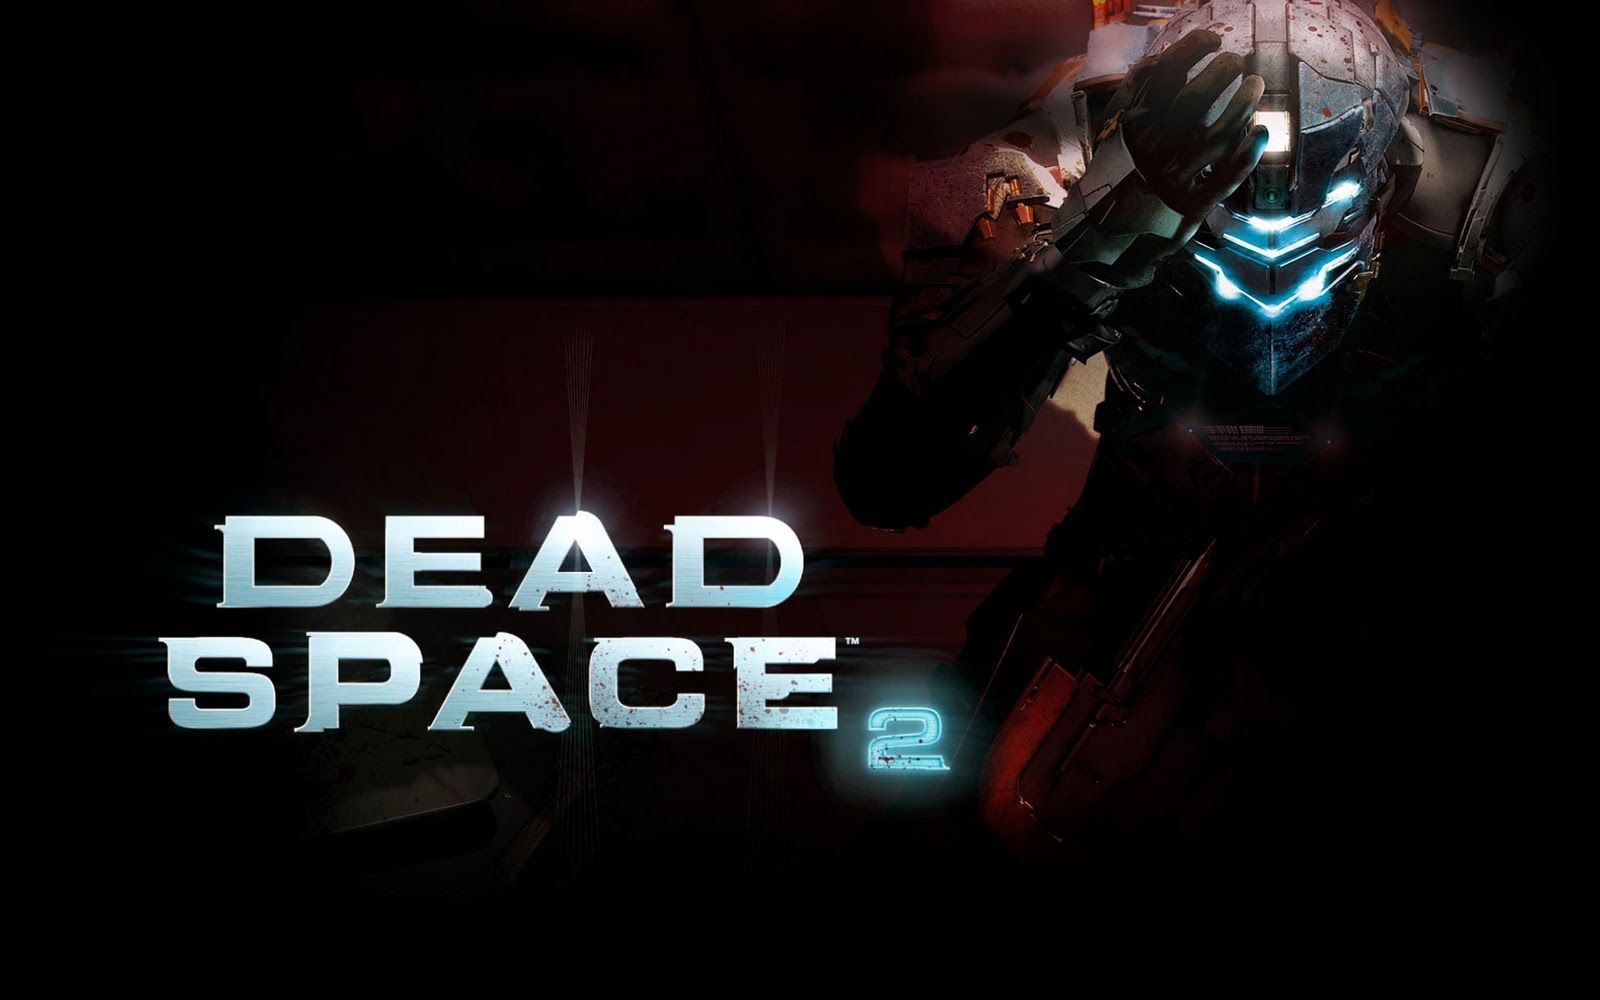 Best Dead Space Wallpaper HD Games